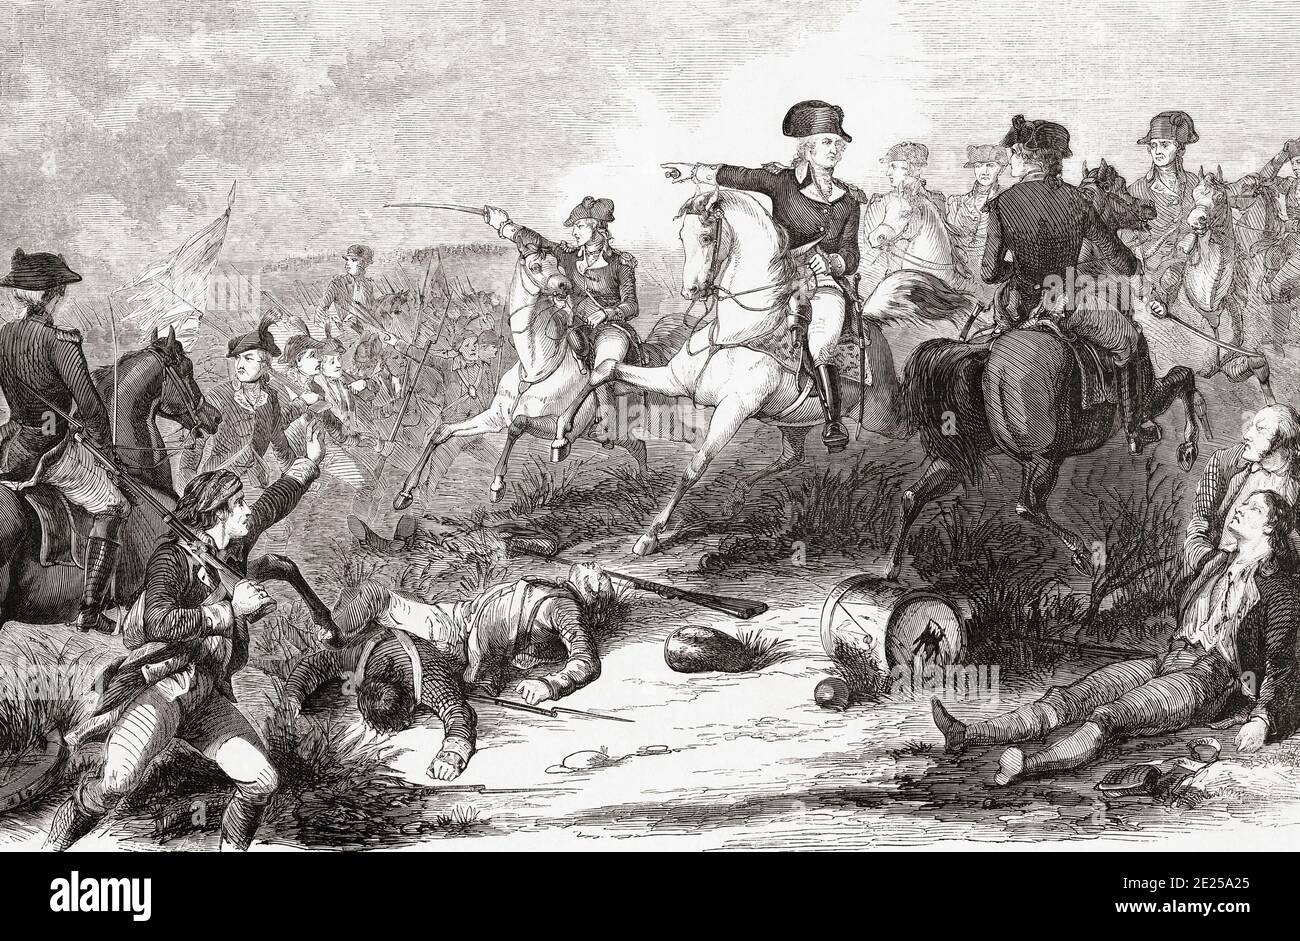 La Batalla de Monmouth o la Batalla de Monmouth Court House, 28 de junio de 1778 durante la Guerra Revolucionaria Americana. En el cuadro George Washington reúne a sus tropas del Ejército Continental. Después de un grabado del siglo XIX por un artista no identificado. Foto de stock